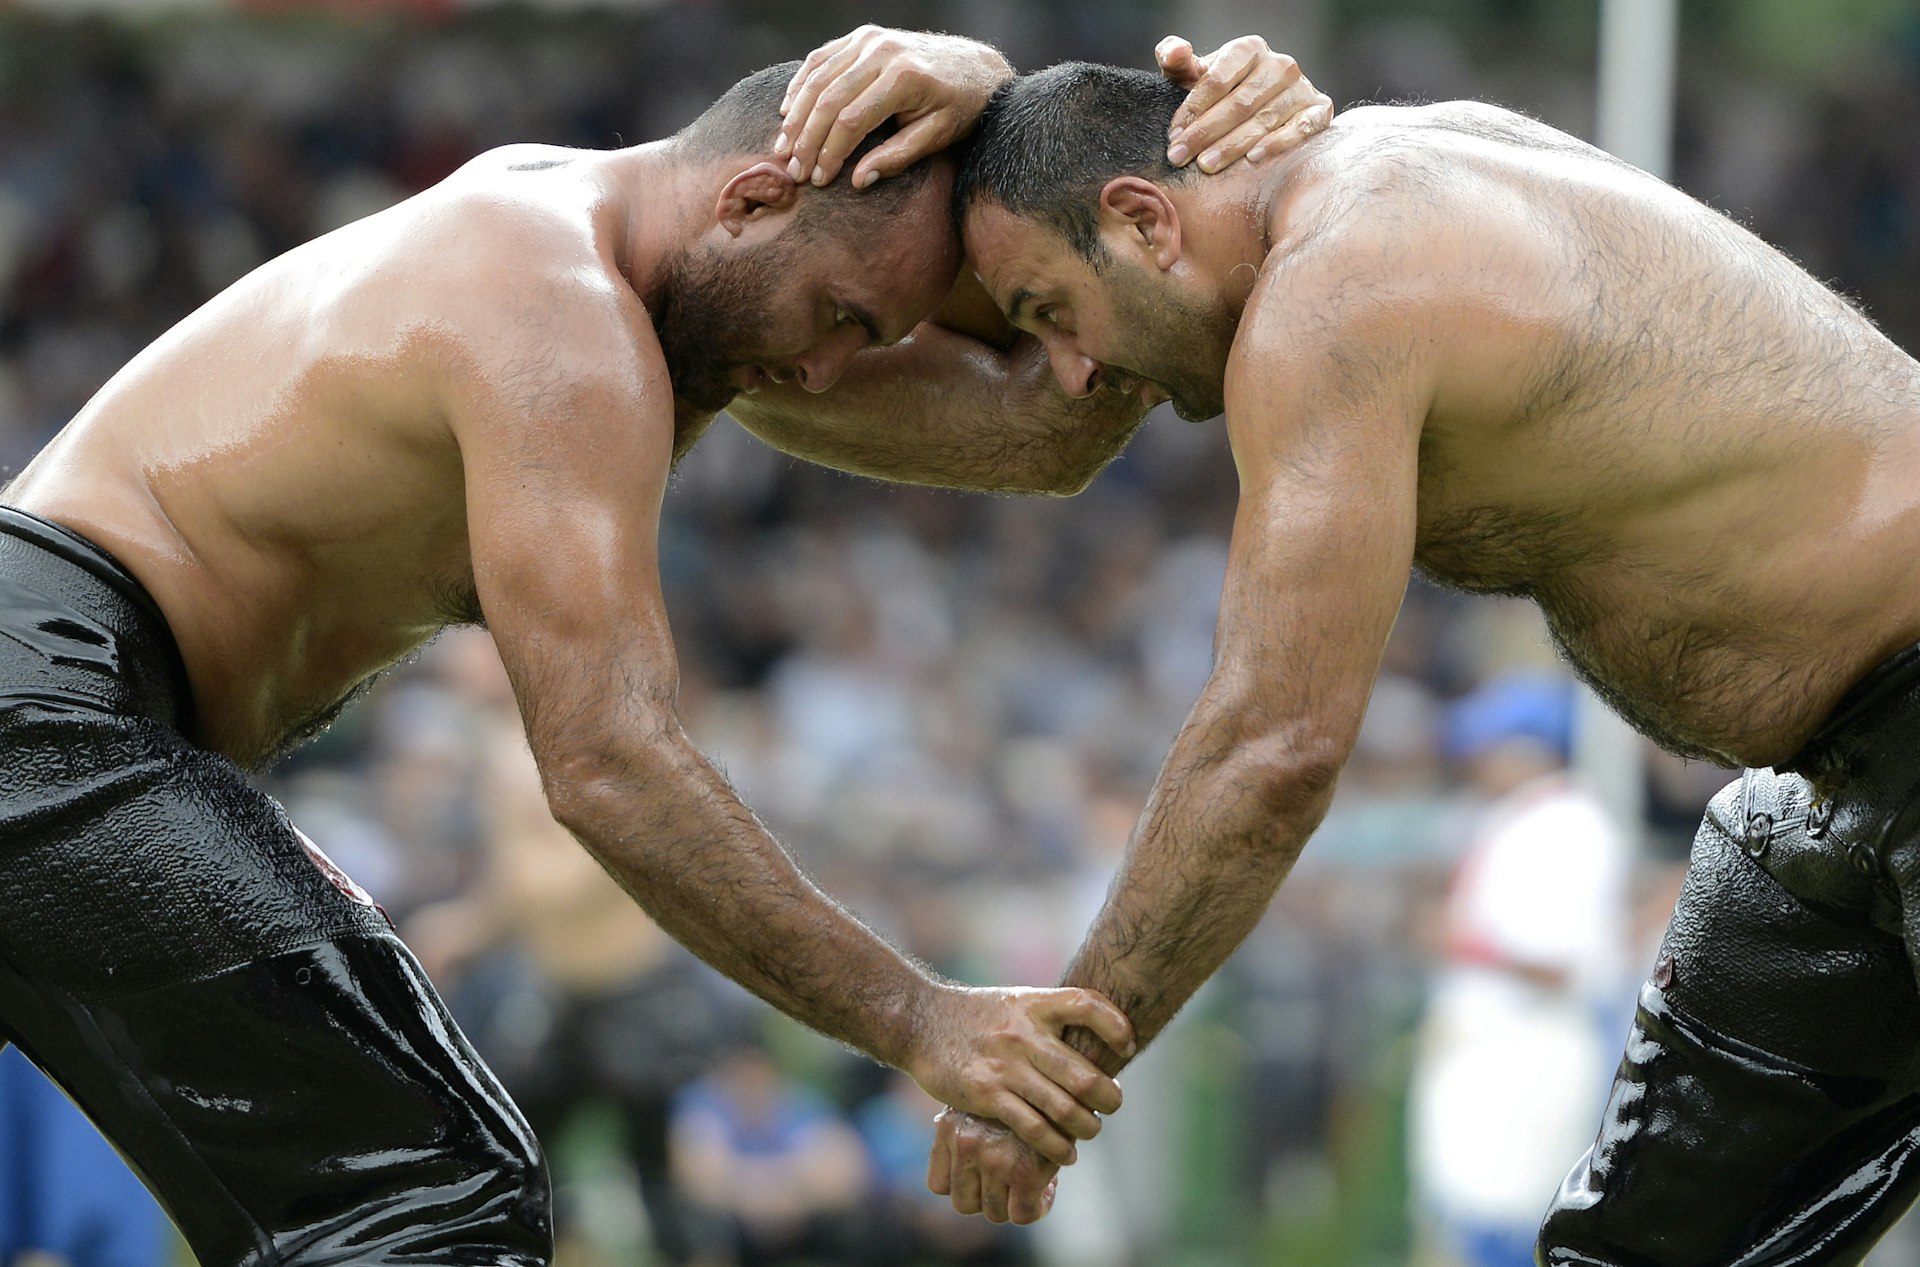 Two oil wrestlers wrestling at Kirkpinar oil wrestling festival, Edirne, Istanbul